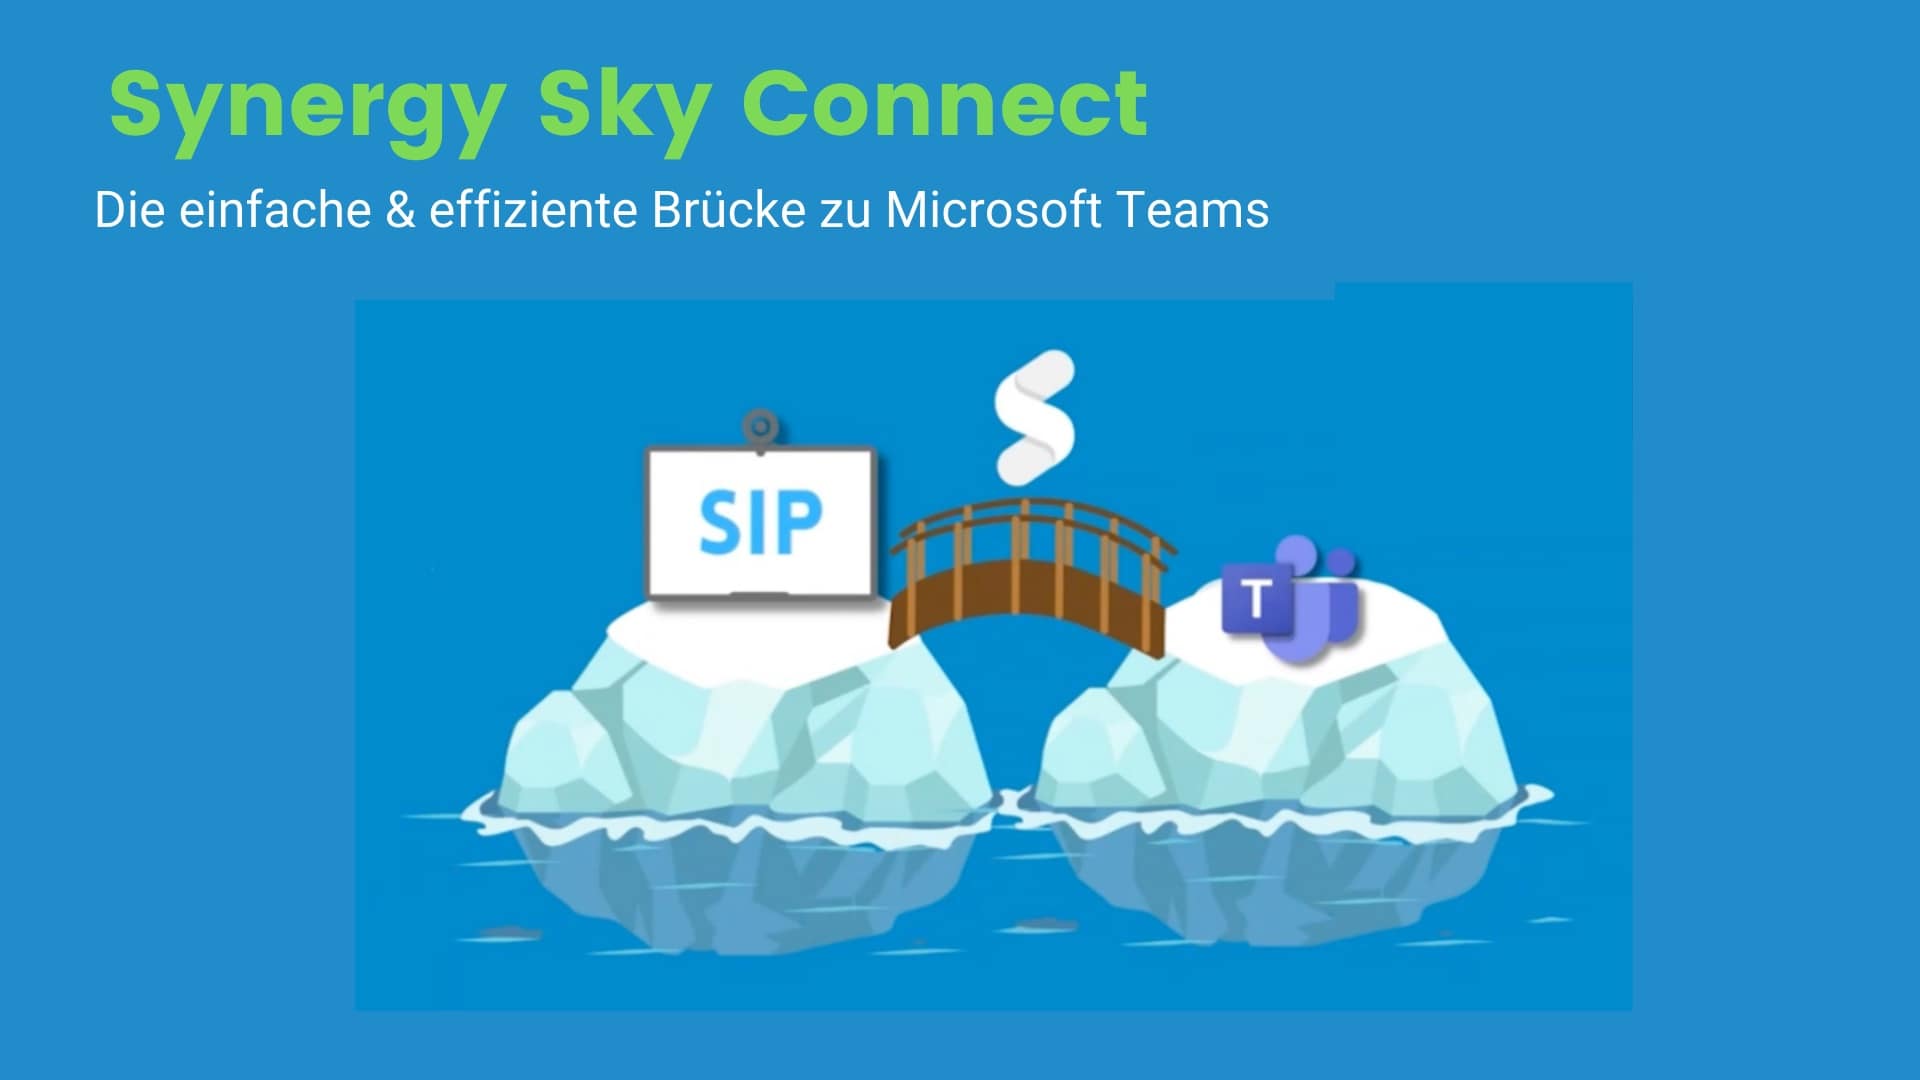 Synergy Sky Connect, die Brücke zu Microsoft Teams